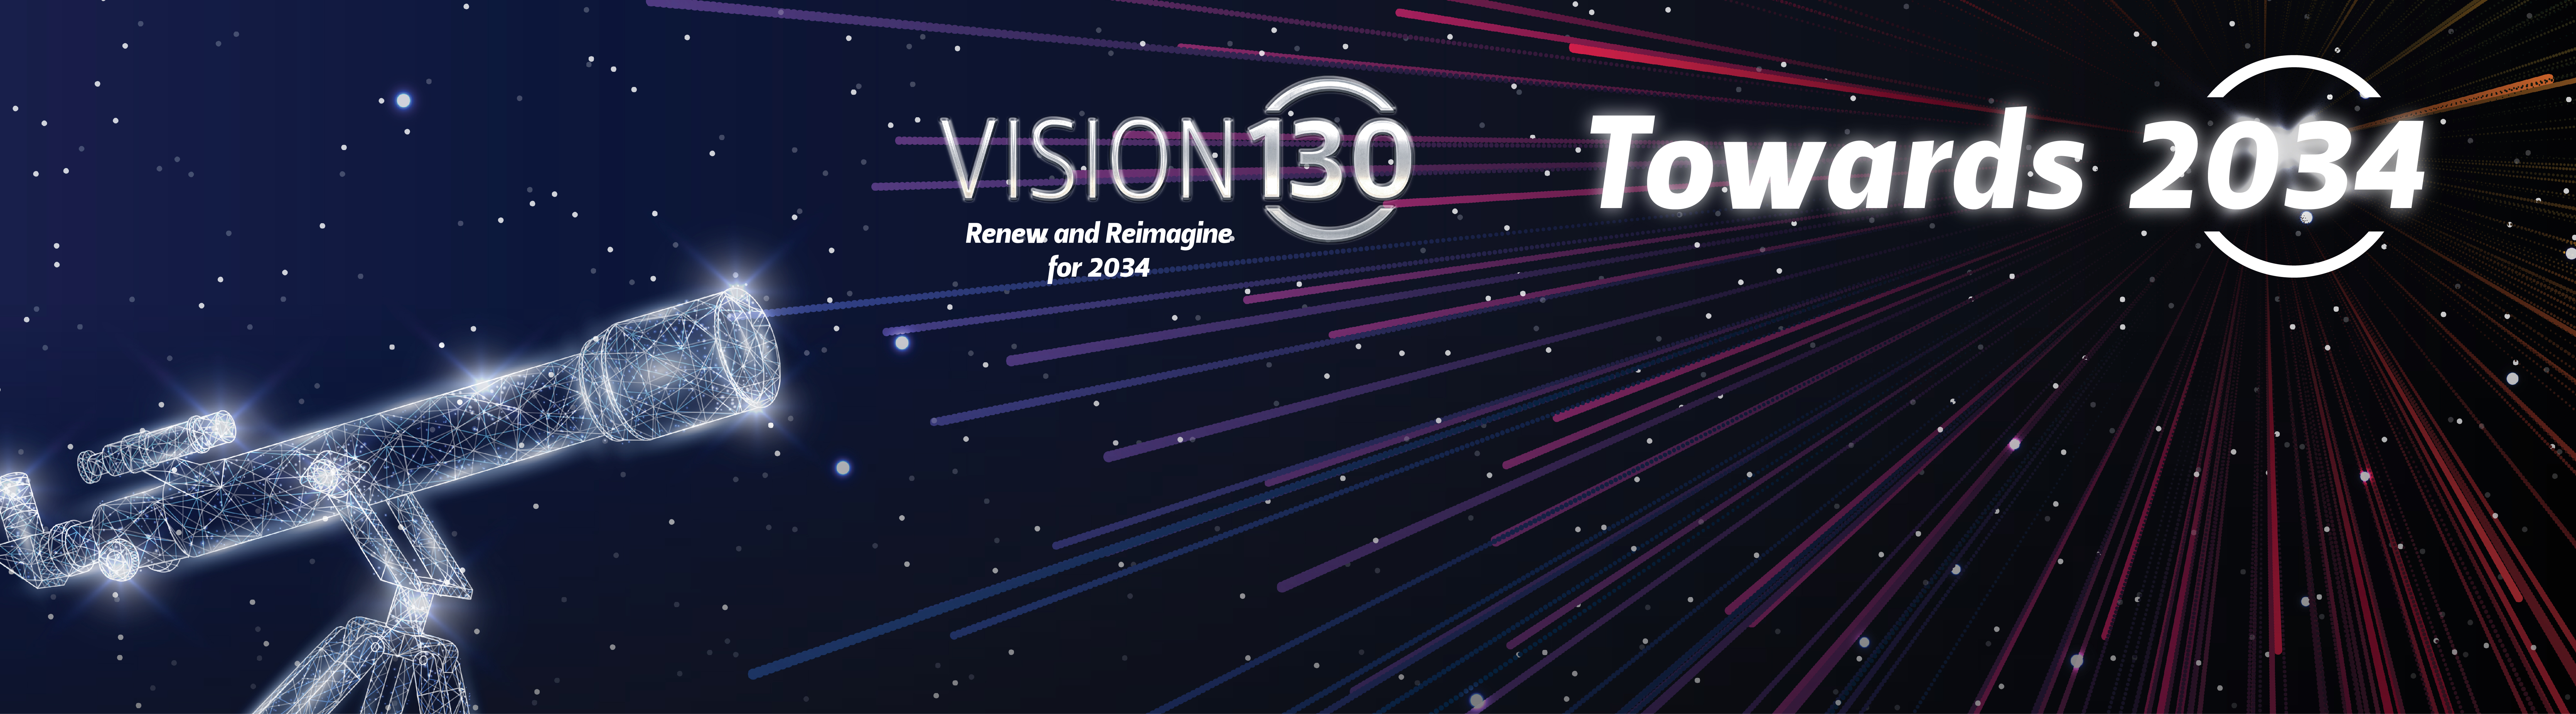 Vision 130 - Towards 2034